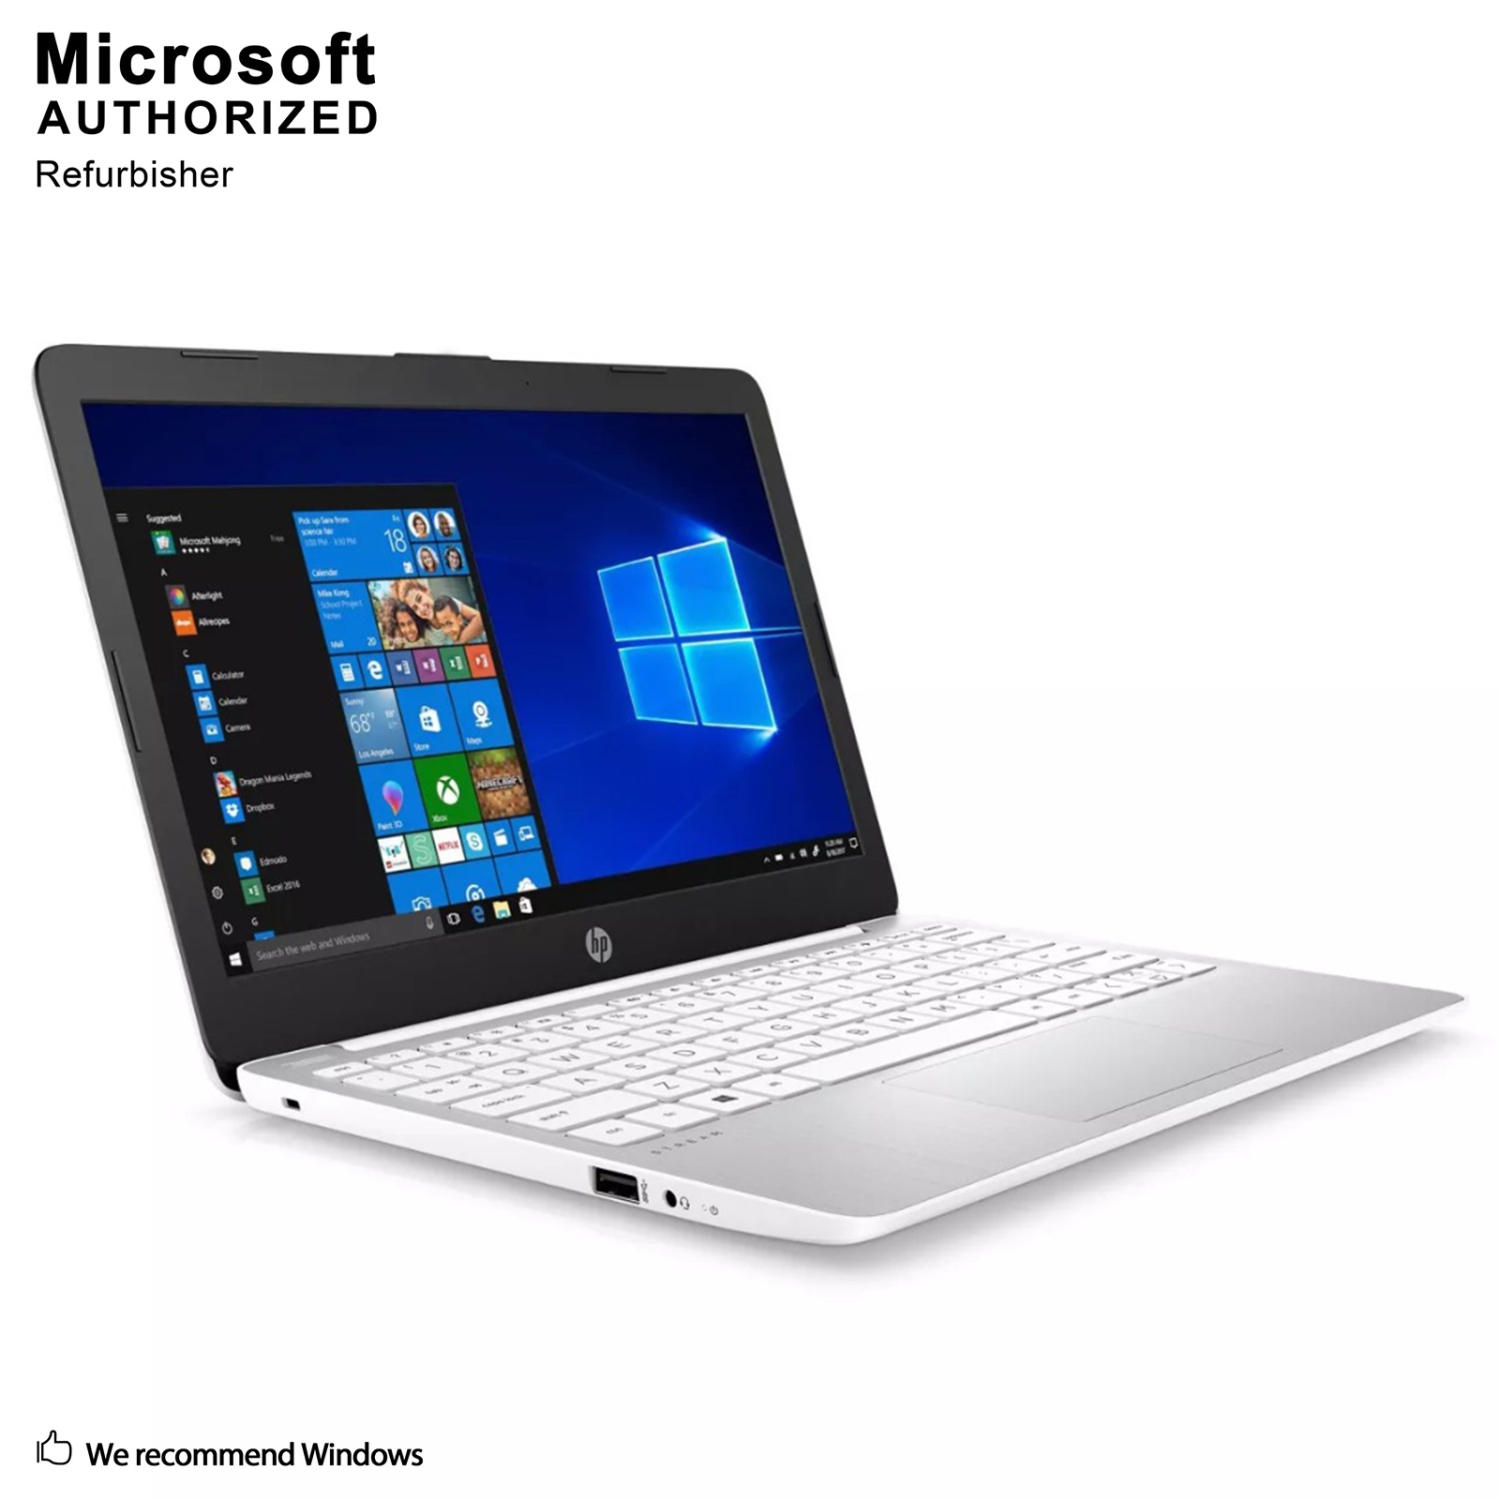 HP STREAM 11-AK1035NR WHITE 11.6" Business Laptop, Intel Atom X5-E8000 1.04GHZ, 4G DDR3L, 32G SSD, HDMI, TYPE-C, USB 3.1, Windows 10 Pro 64 Bit-Multi-Language(EN/ES/FR)-Refurbished